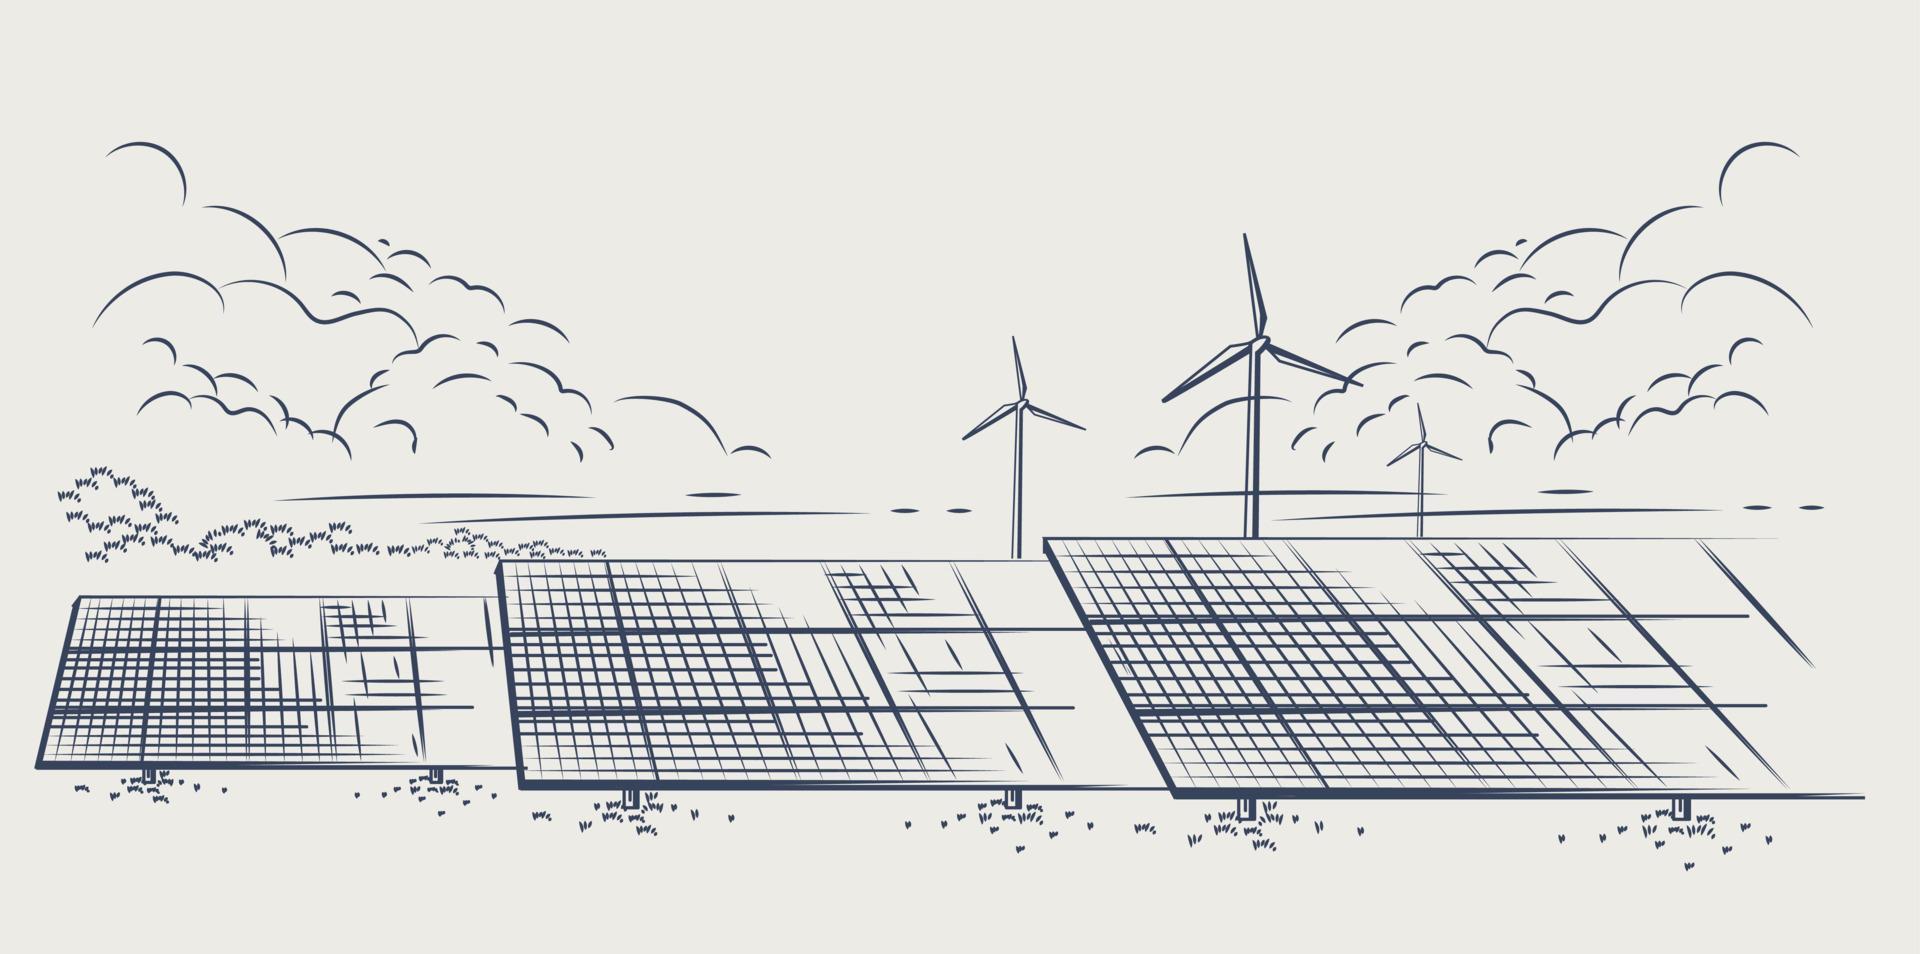 Sonnenkollektoren und Windkraftanlagen oder alternative Energiequellen. ökologisch nachhaltige Energieversorgung. Vektor-Illustration-Design. vektor